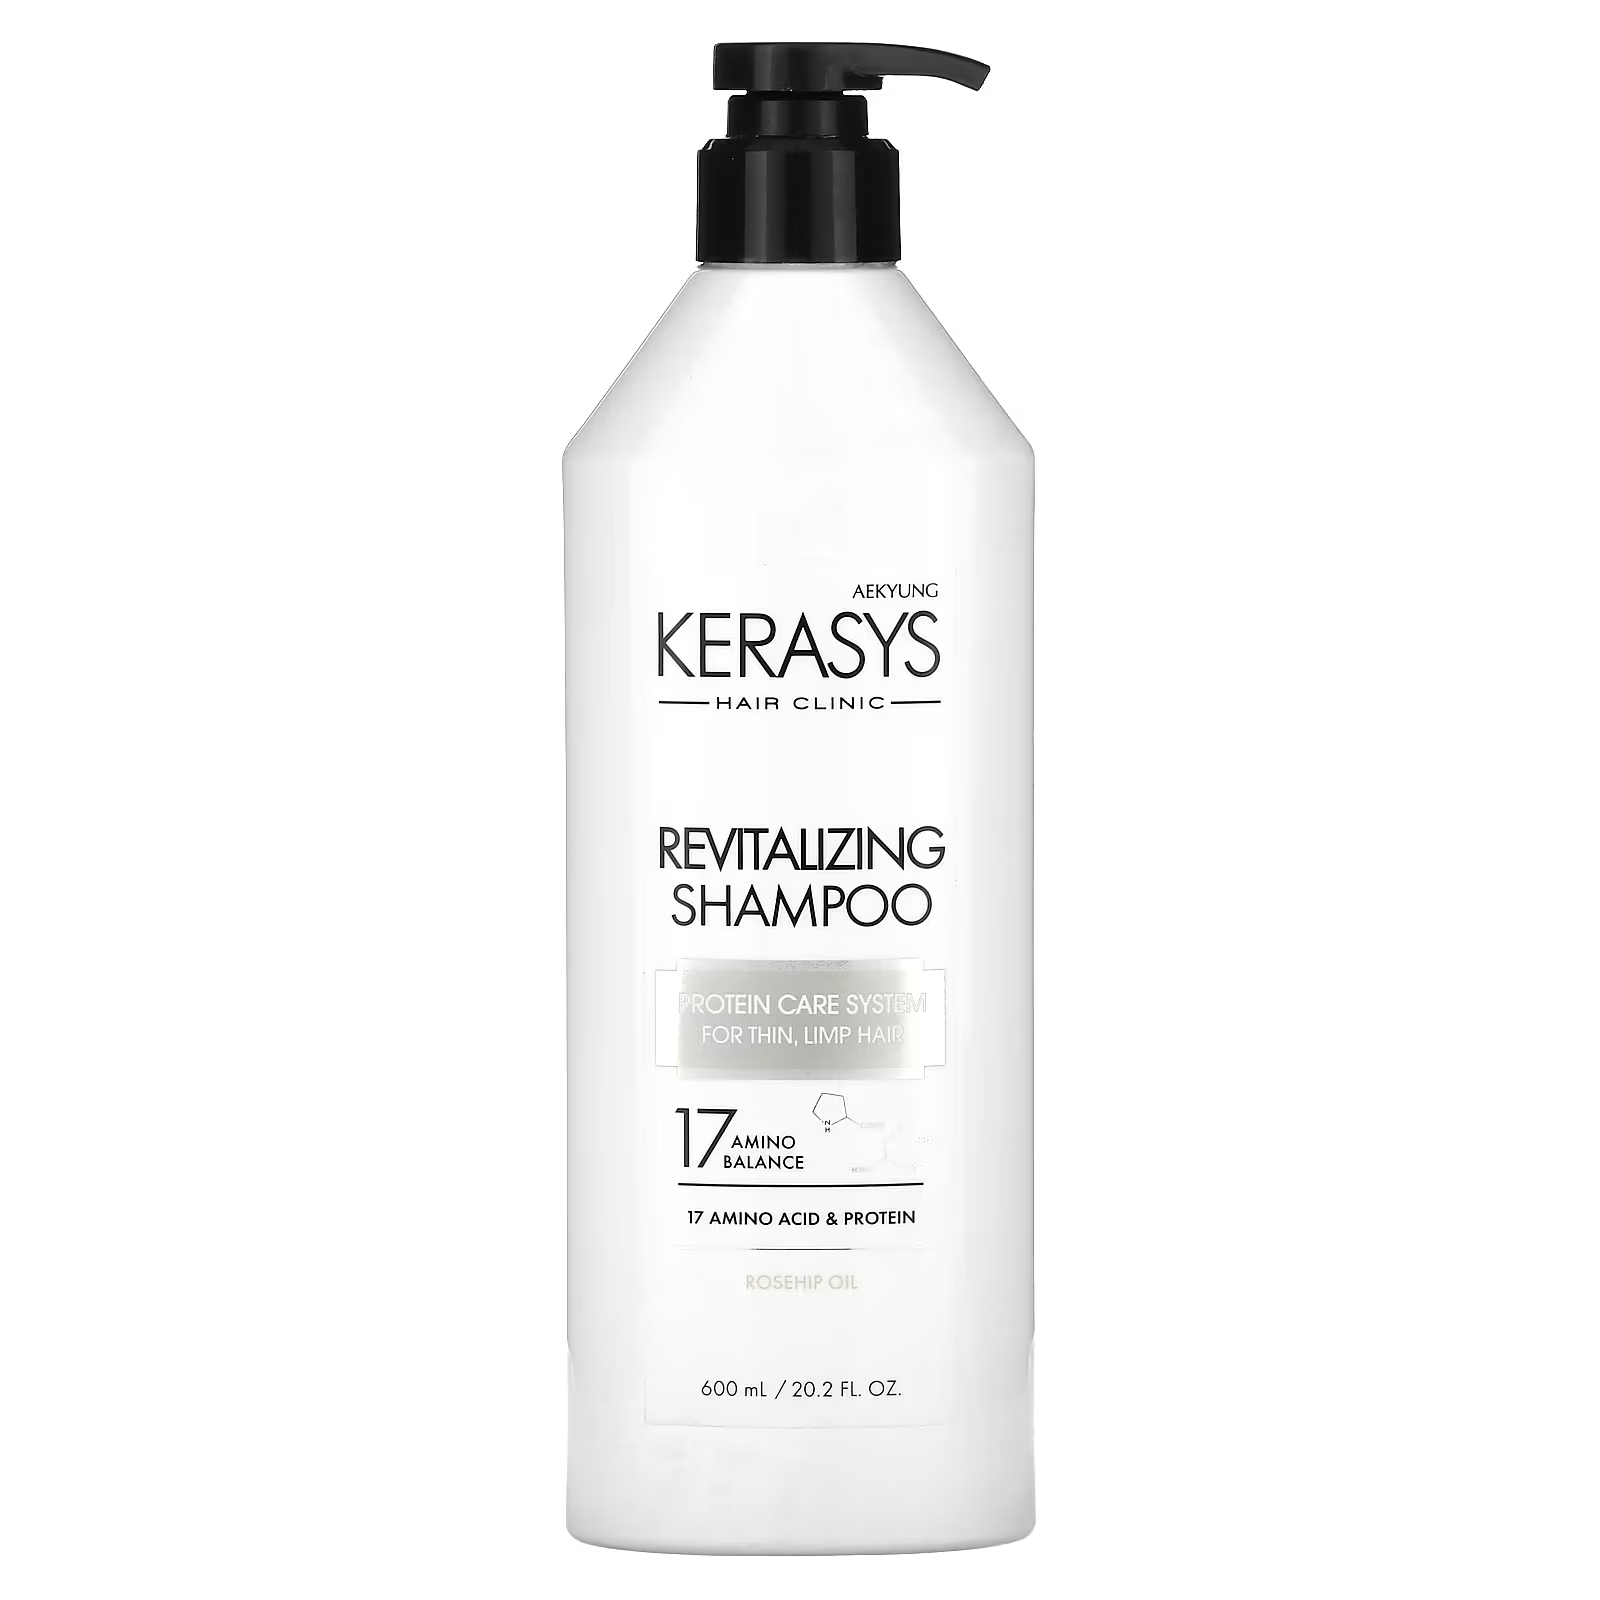 цена Восстанавливающий шампунь Kerasys для тонких и ослабленных волос, 600 мл